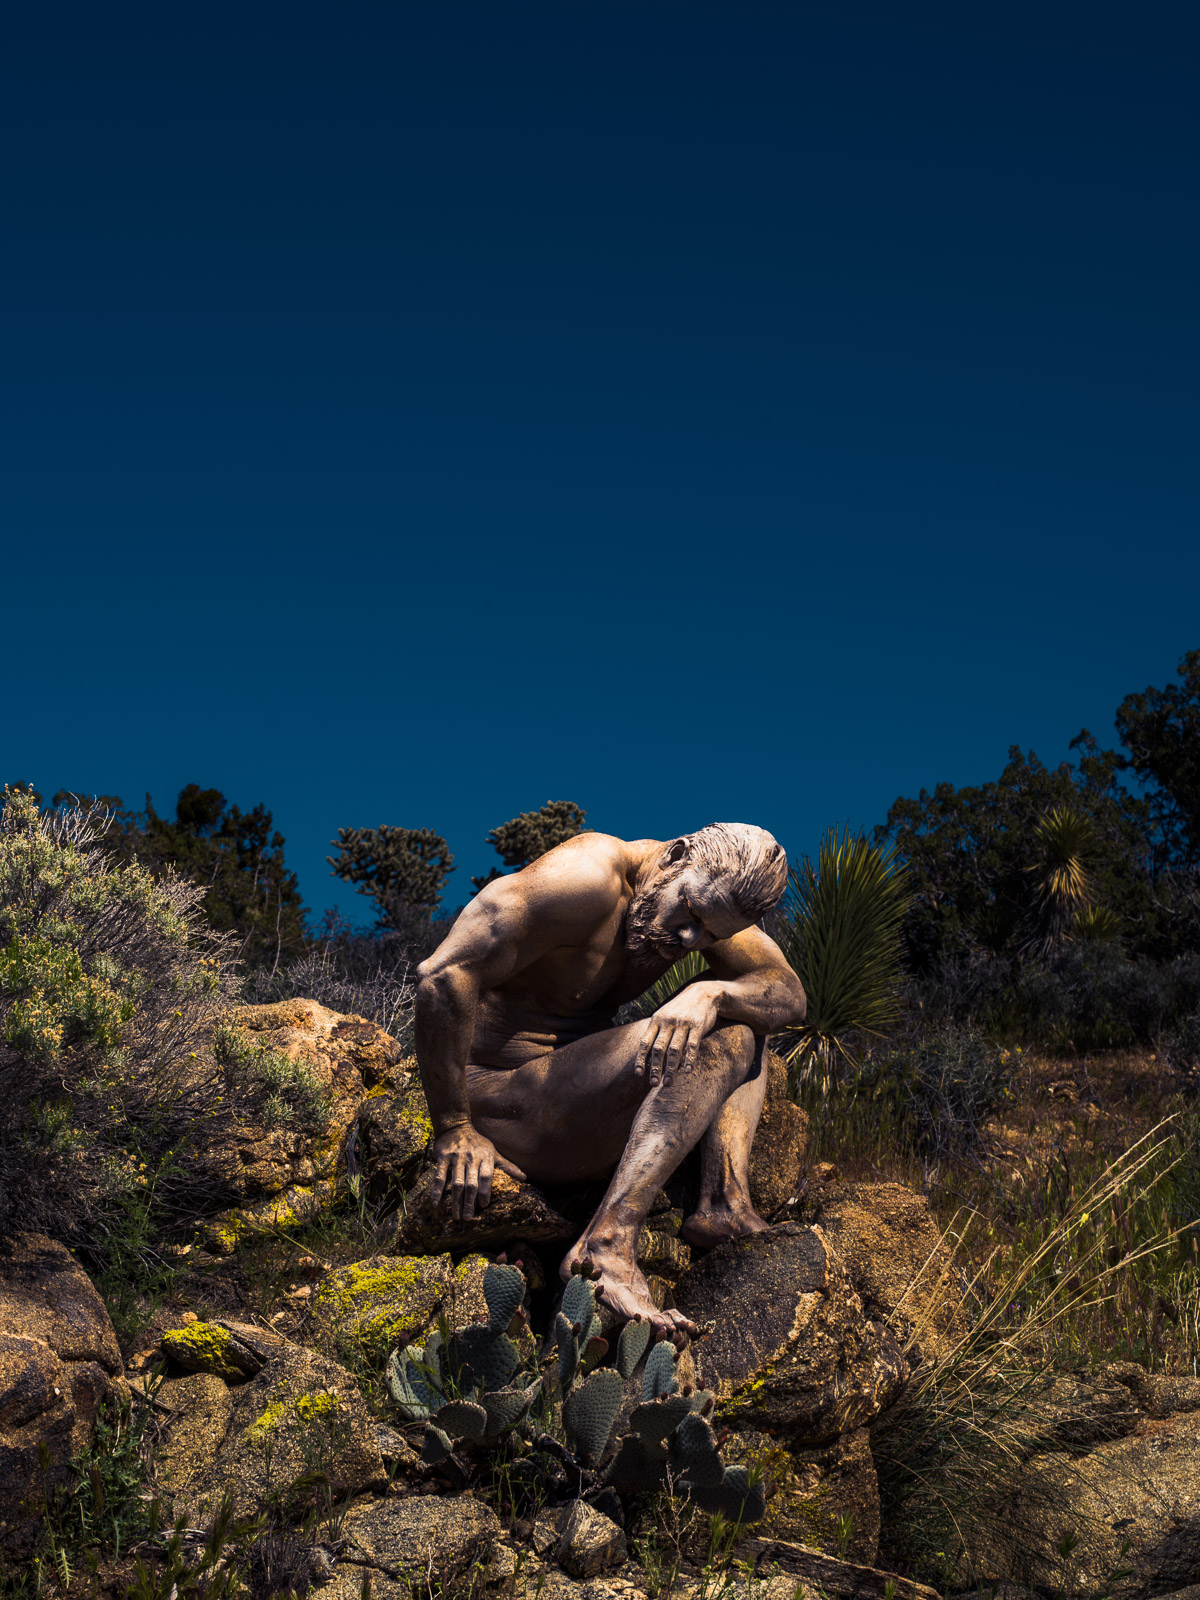 "Restore" from Fertile Desert by Eric Schwabel